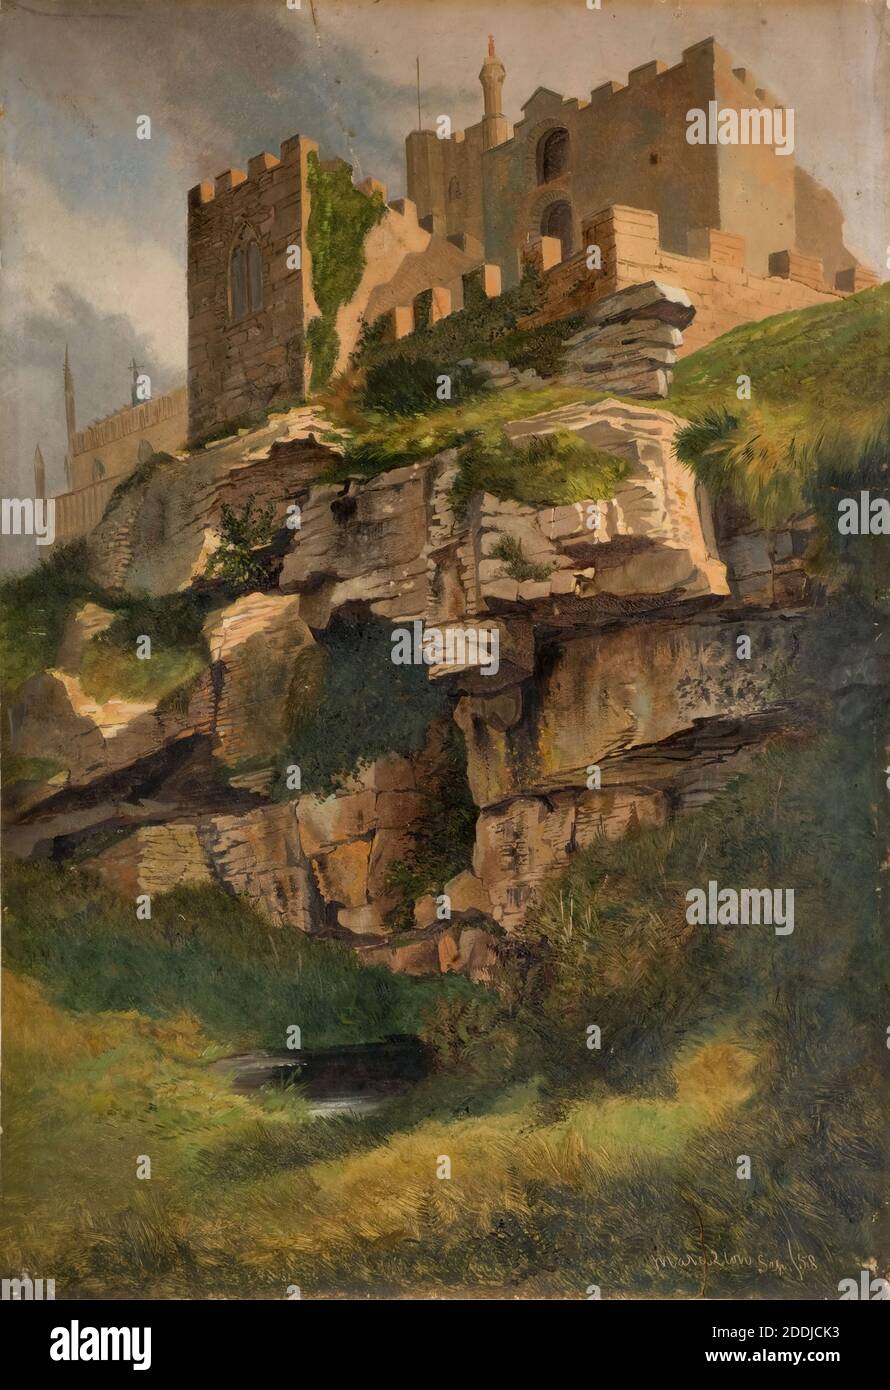 Falaises à Marazion, Cornouailles, 1858 par Benjamin Johnson Jnr, peinture à l'huile, Architecture, Cornouailles, Eglise, falaise Banque D'Images